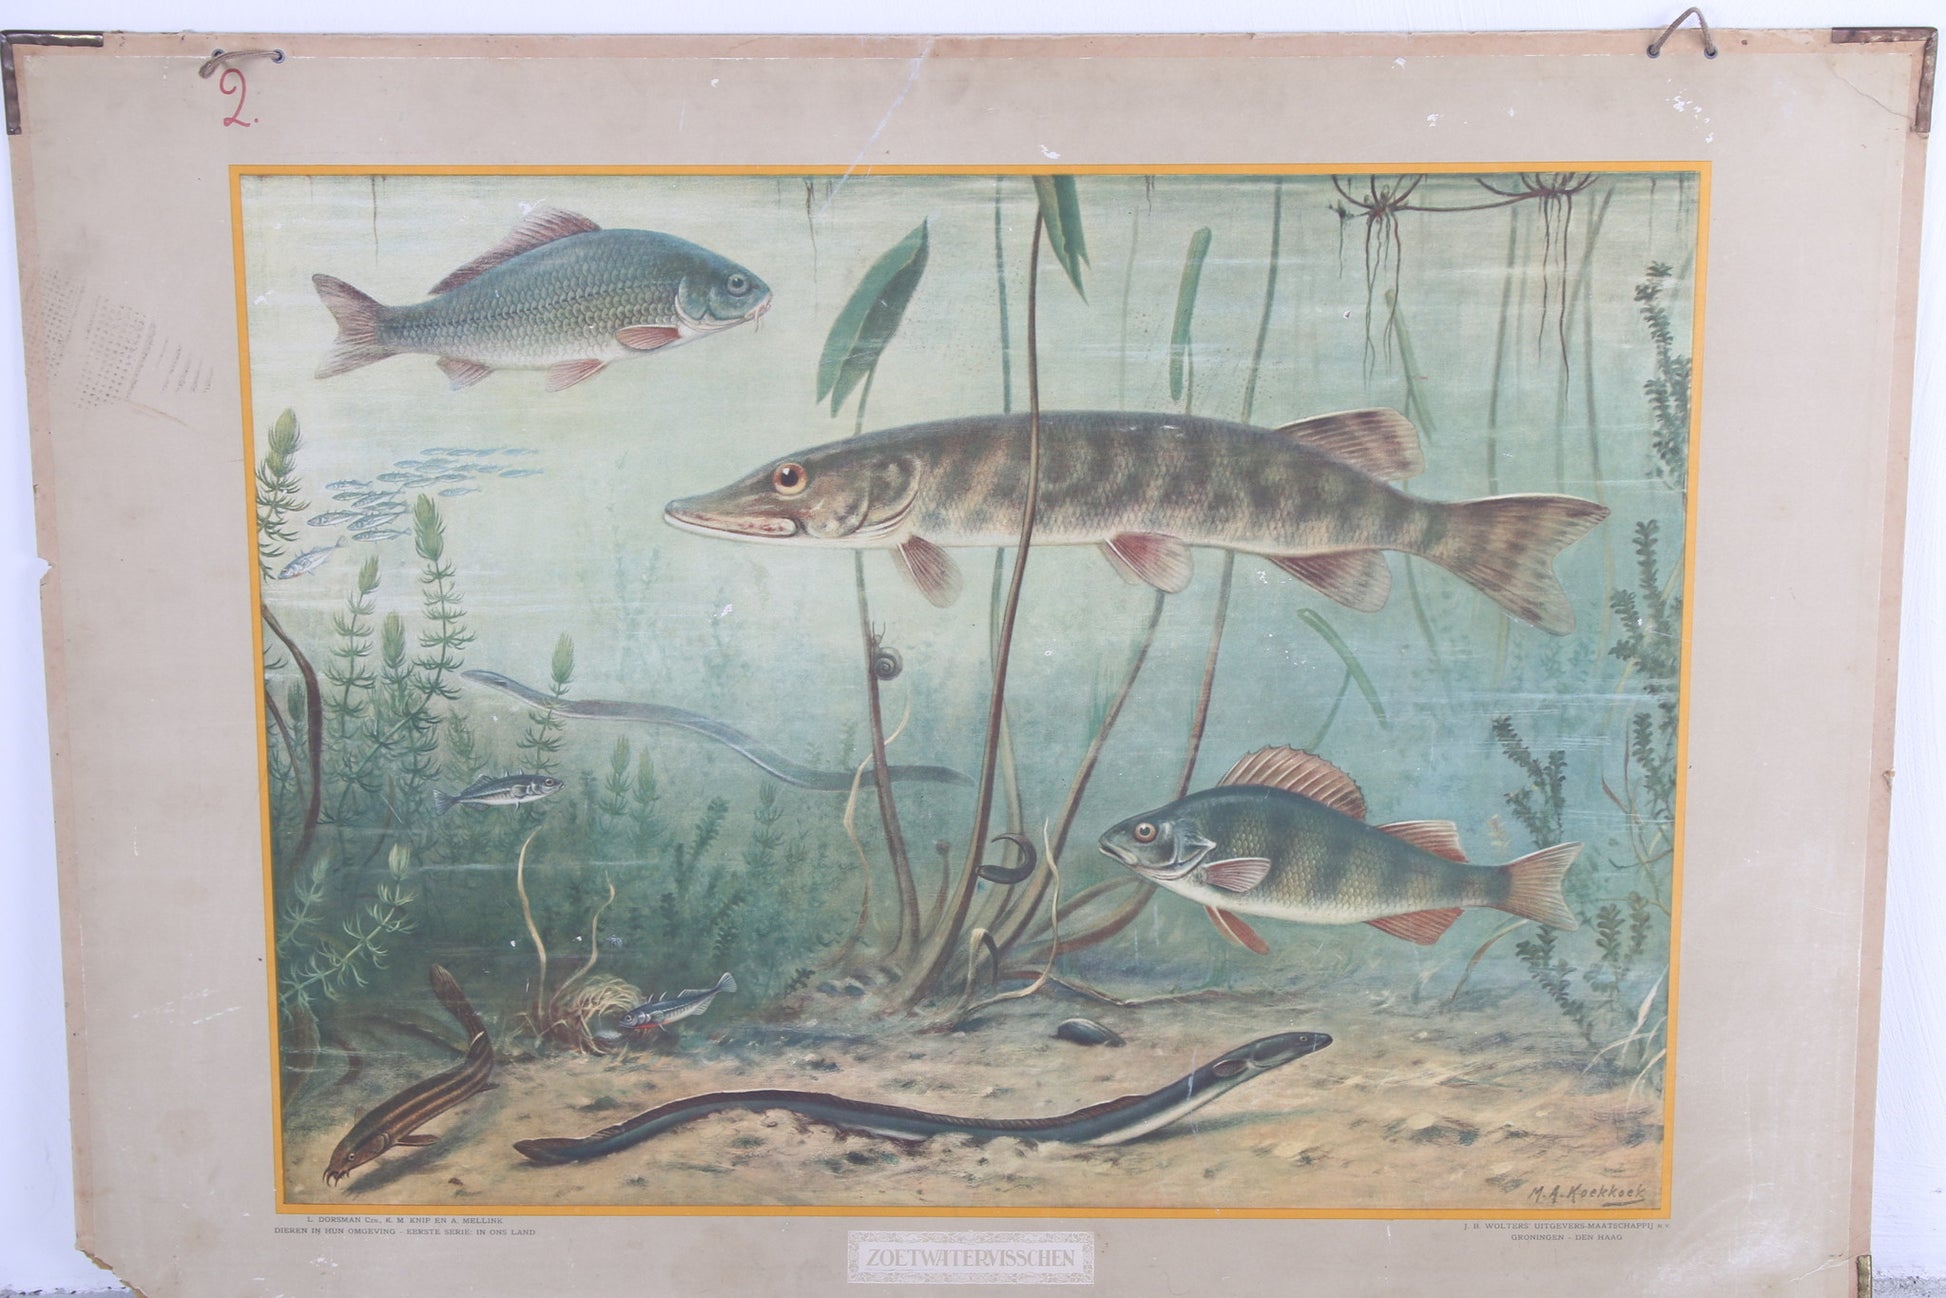 Vintage Schoolkaart Vissen en Groei van een vleermuis jaren60s voorkant vissenkaart